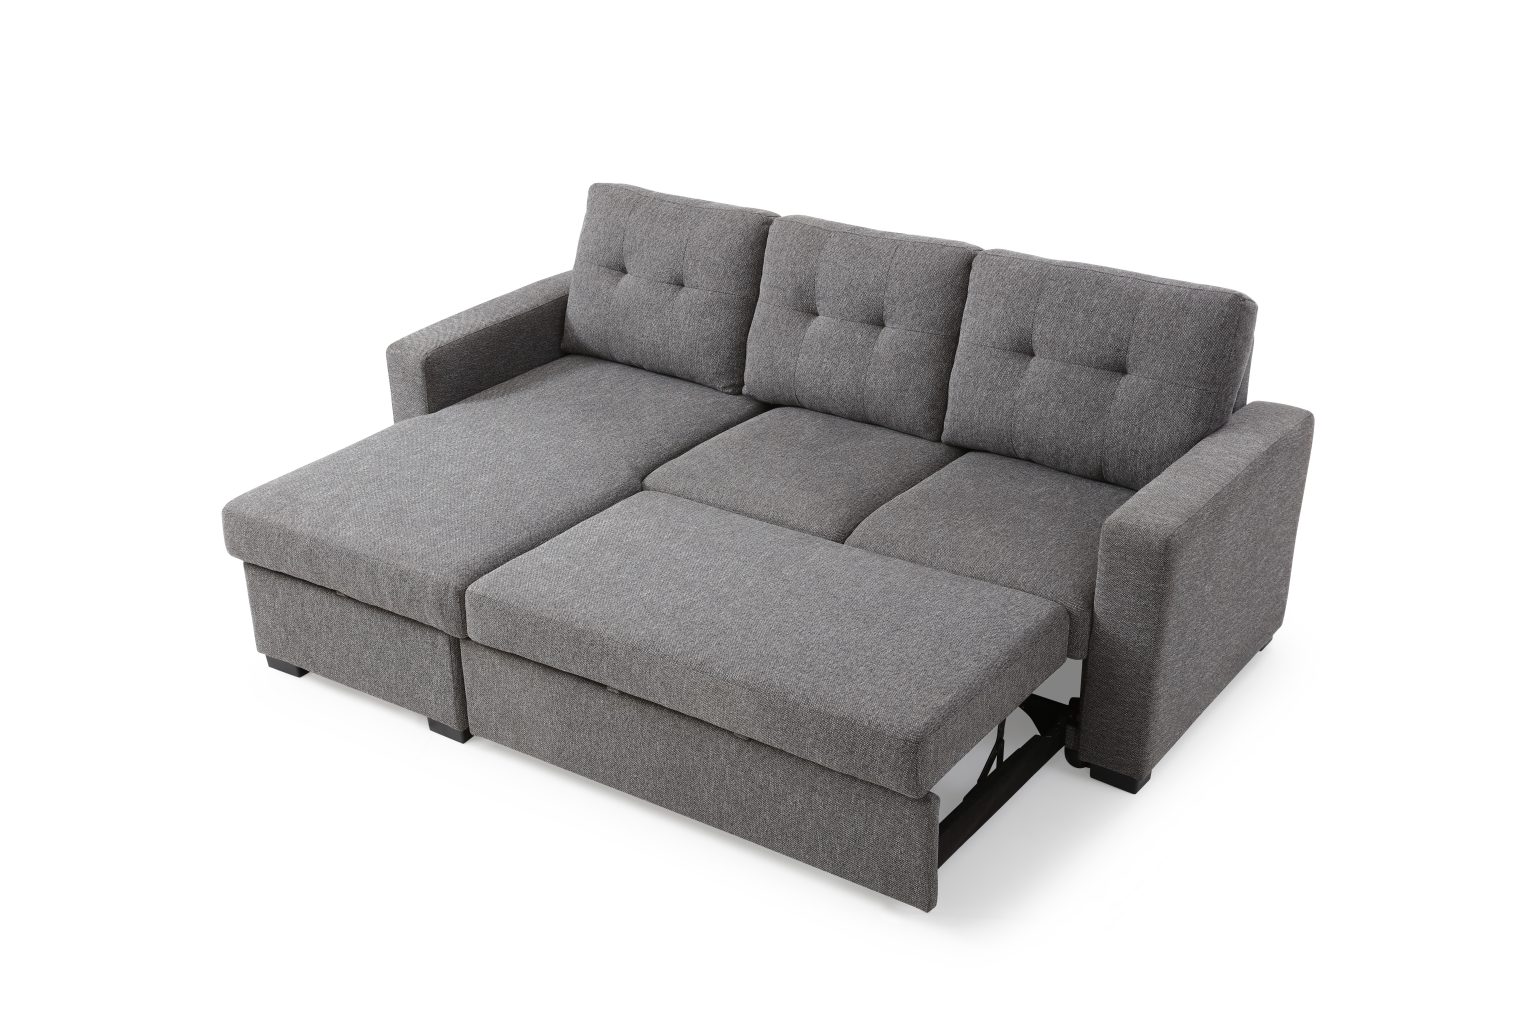 halo corner sofa bed